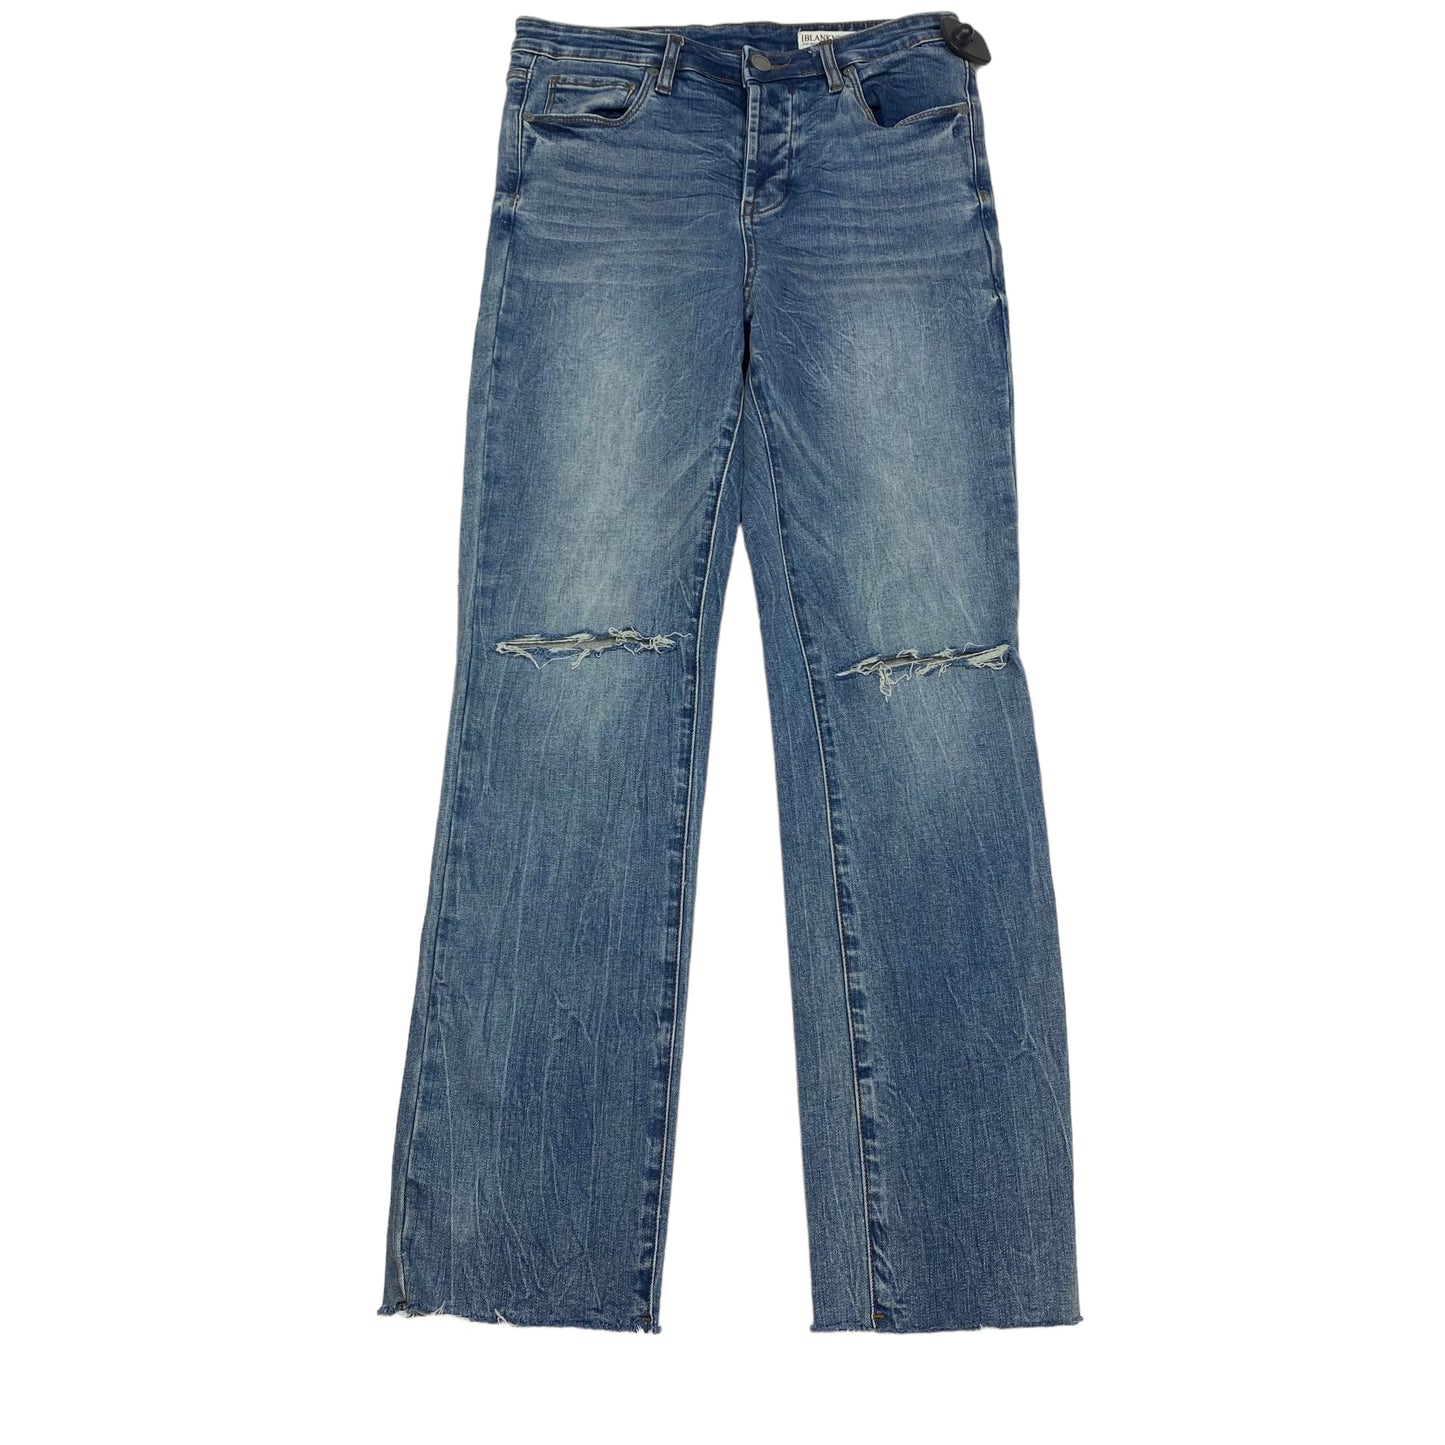 Blue Denim Jeans Skinny Blanknyc, Size 6